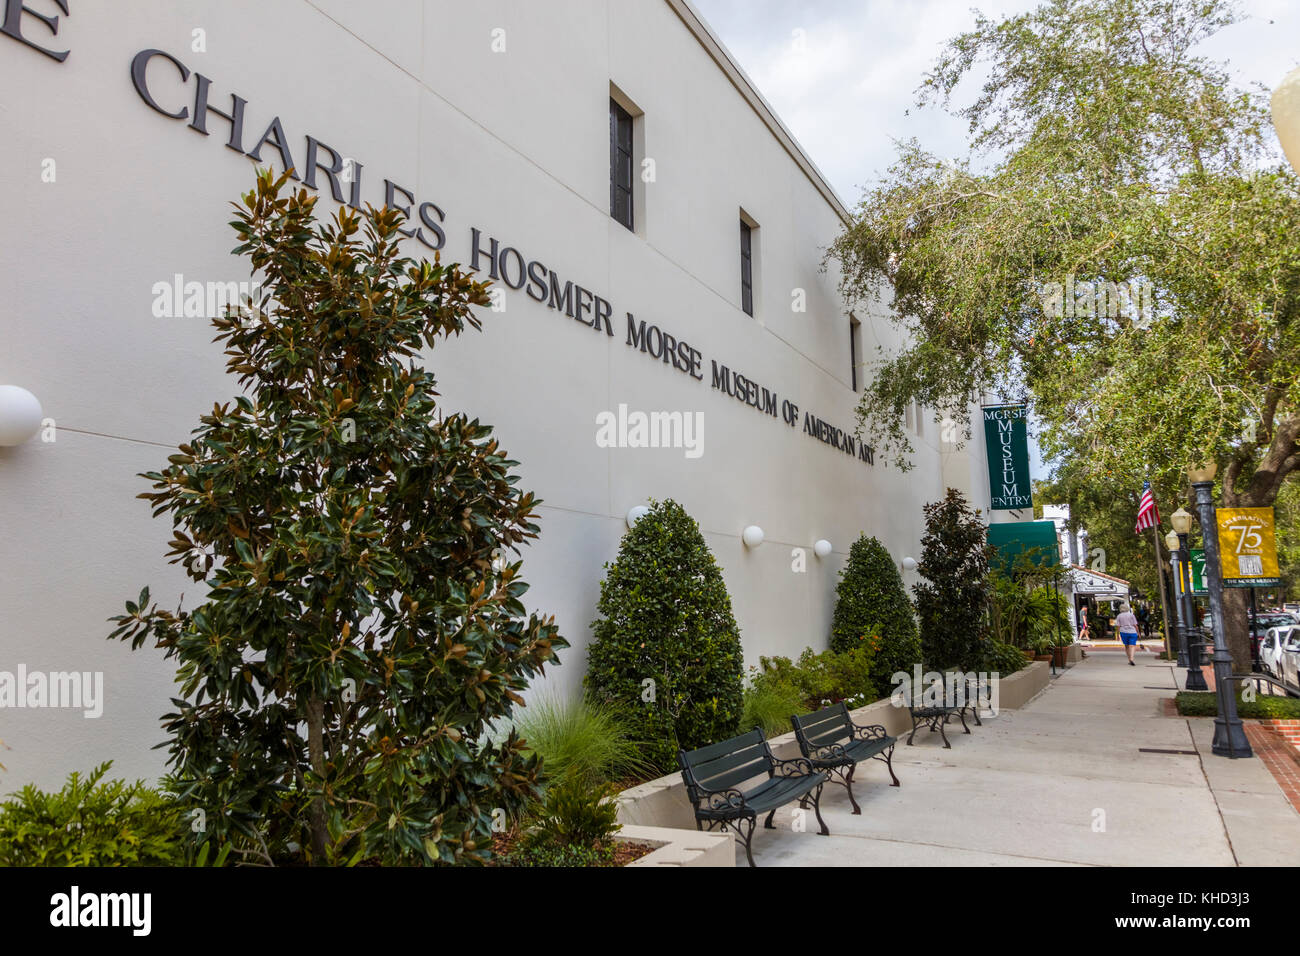 The Charles hosmer Morse Museum der amerikanischen kunst an der Park Avenue in Winter Park, Florida Vereinigte Staaten von Amerika Stockfoto